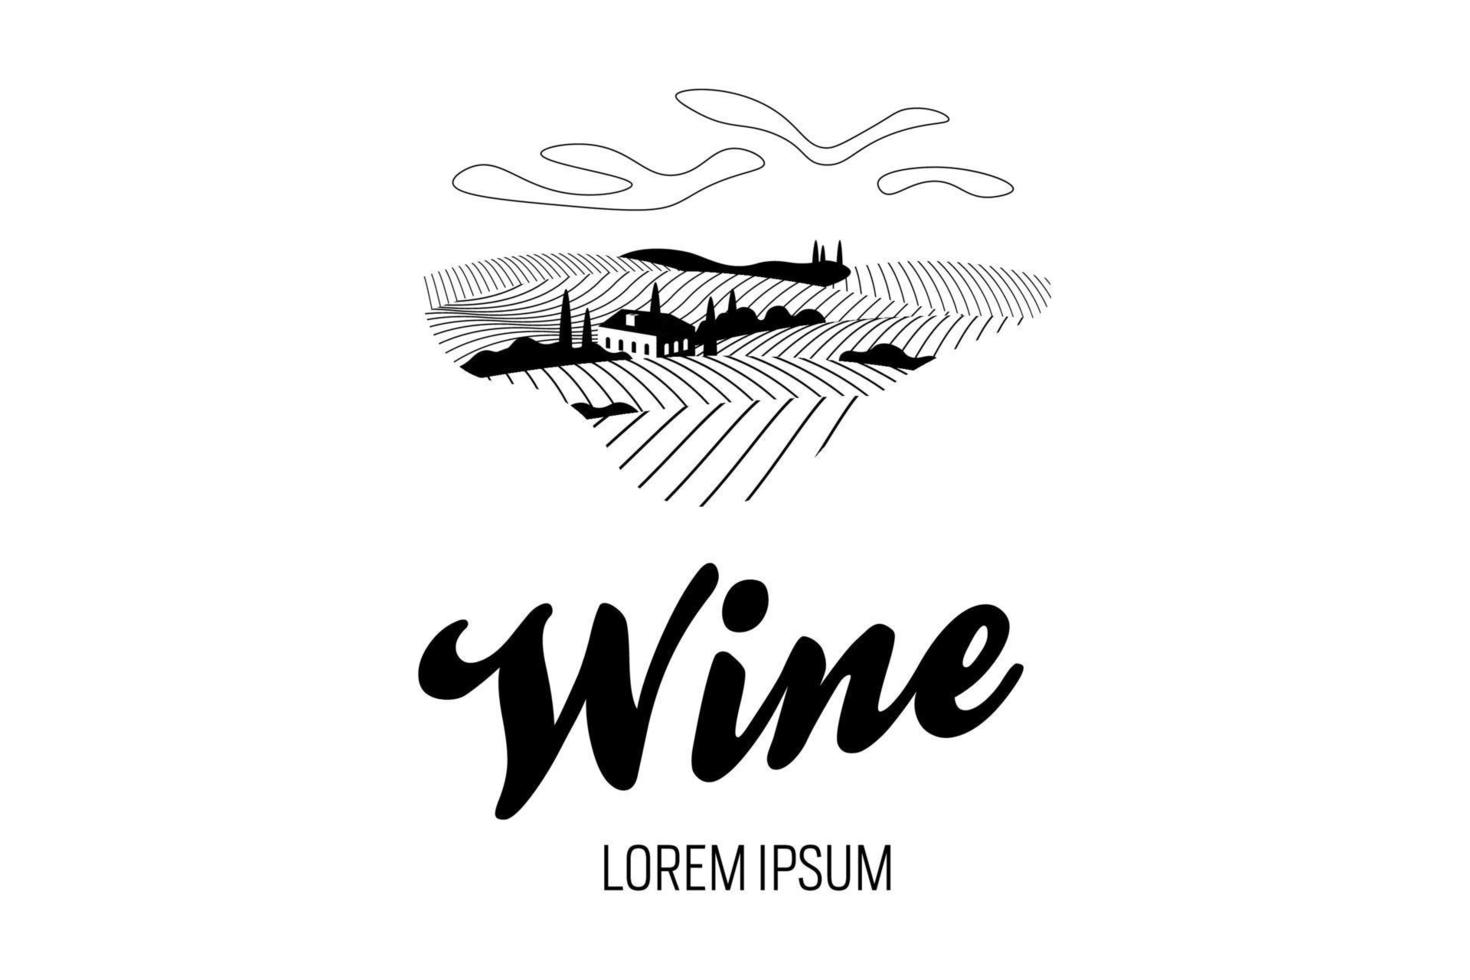 wijngaard wijn druif heuvel boerderij logo concept. alcohol label romantisch landelijk landschap in zonnige dag met villa, wijngaard velden, plantage heuvels, boerderijen, weiden en bomen. vector eps monochroom logo